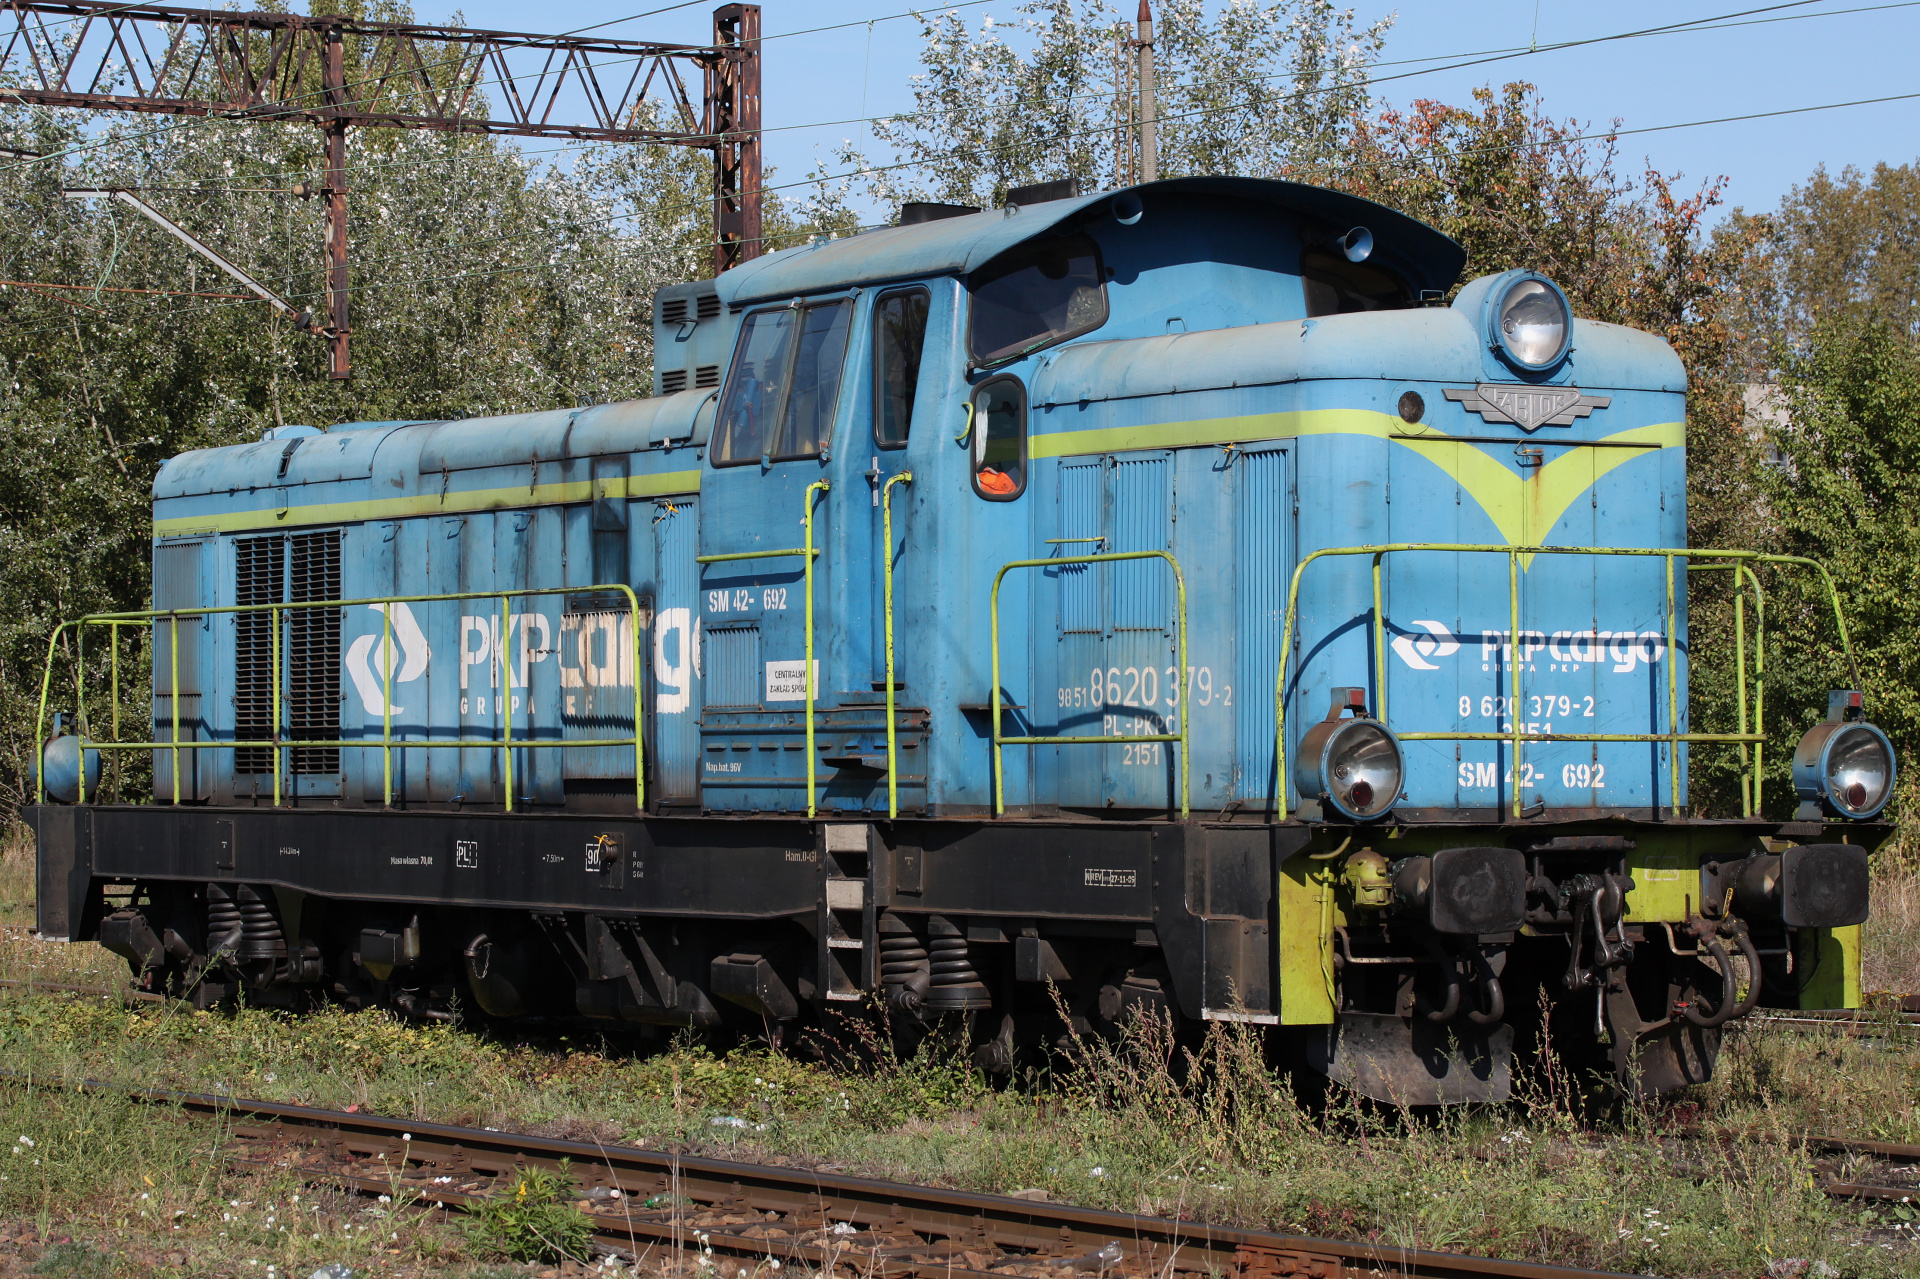 SM42-692 (Pojazdy » Pociągi i lokomotywy » Fablok 6D)